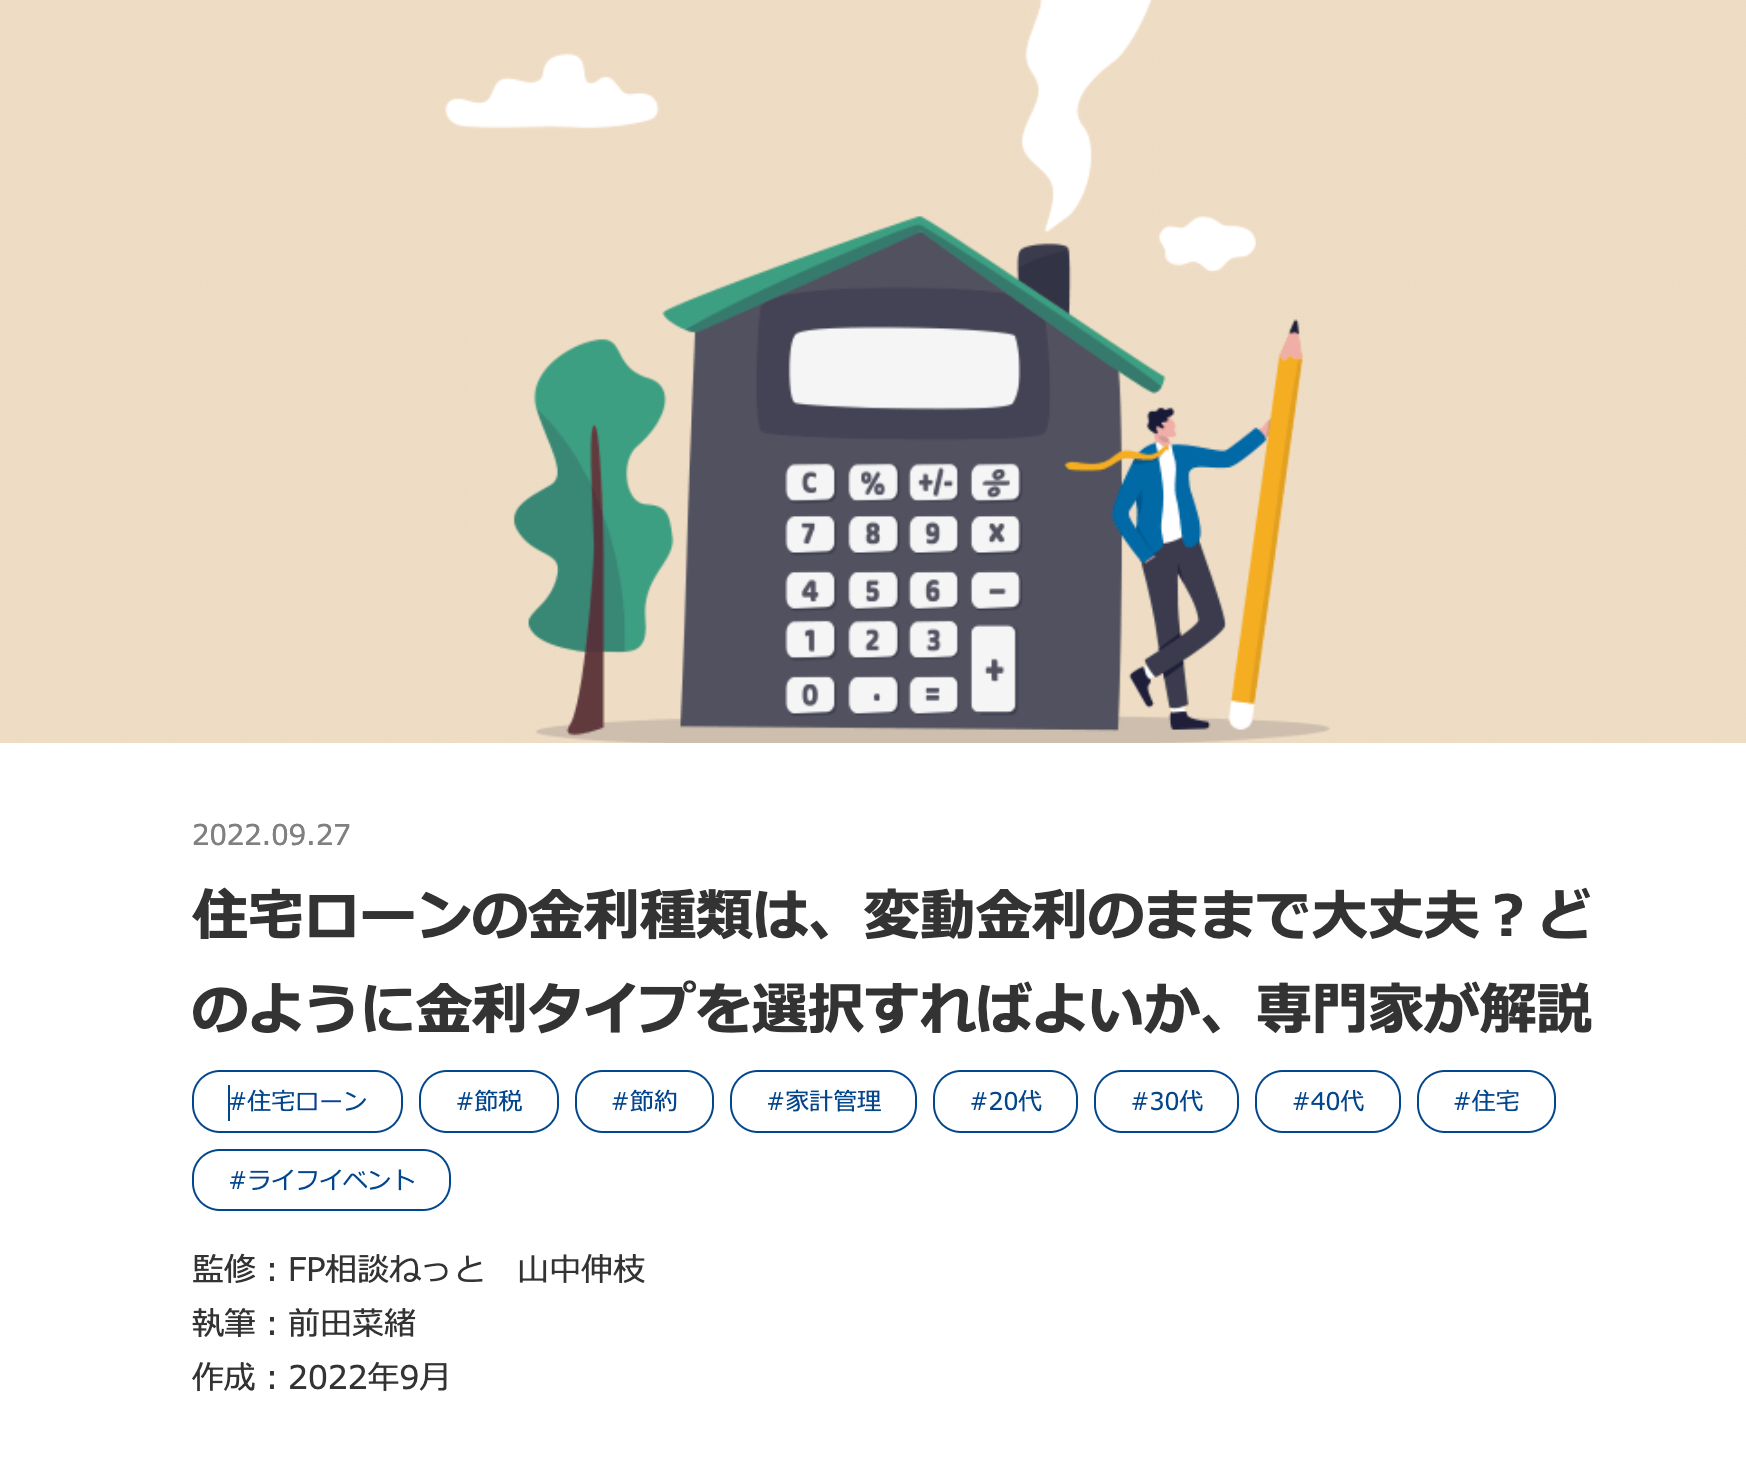 【メディア掲載】横浜銀行様 「住宅ローン」「マイカーローン・残価設定ローン」のコラム掲載